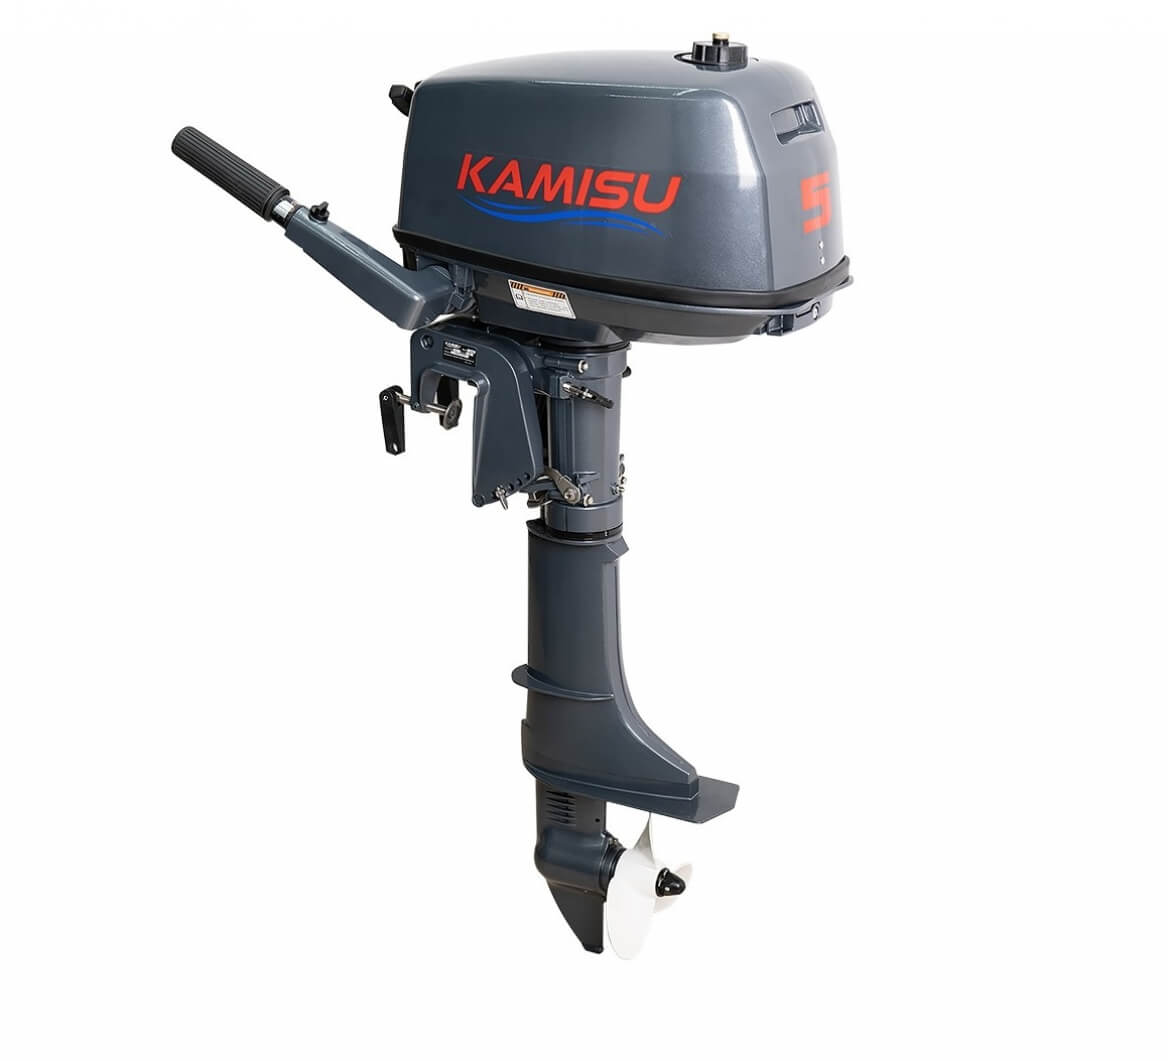 Kamisu 9.8 мотор. Лодочный мотор Kamisu t 9.9 Pro BMS (2-Х тактный). Kamisu t 5 BMS. Лодочный мотор Kamisu t9.8BMS. Лодочный мотор Kamisu t 9.9 Pro BMS (2-Х тактный) Смоленск.